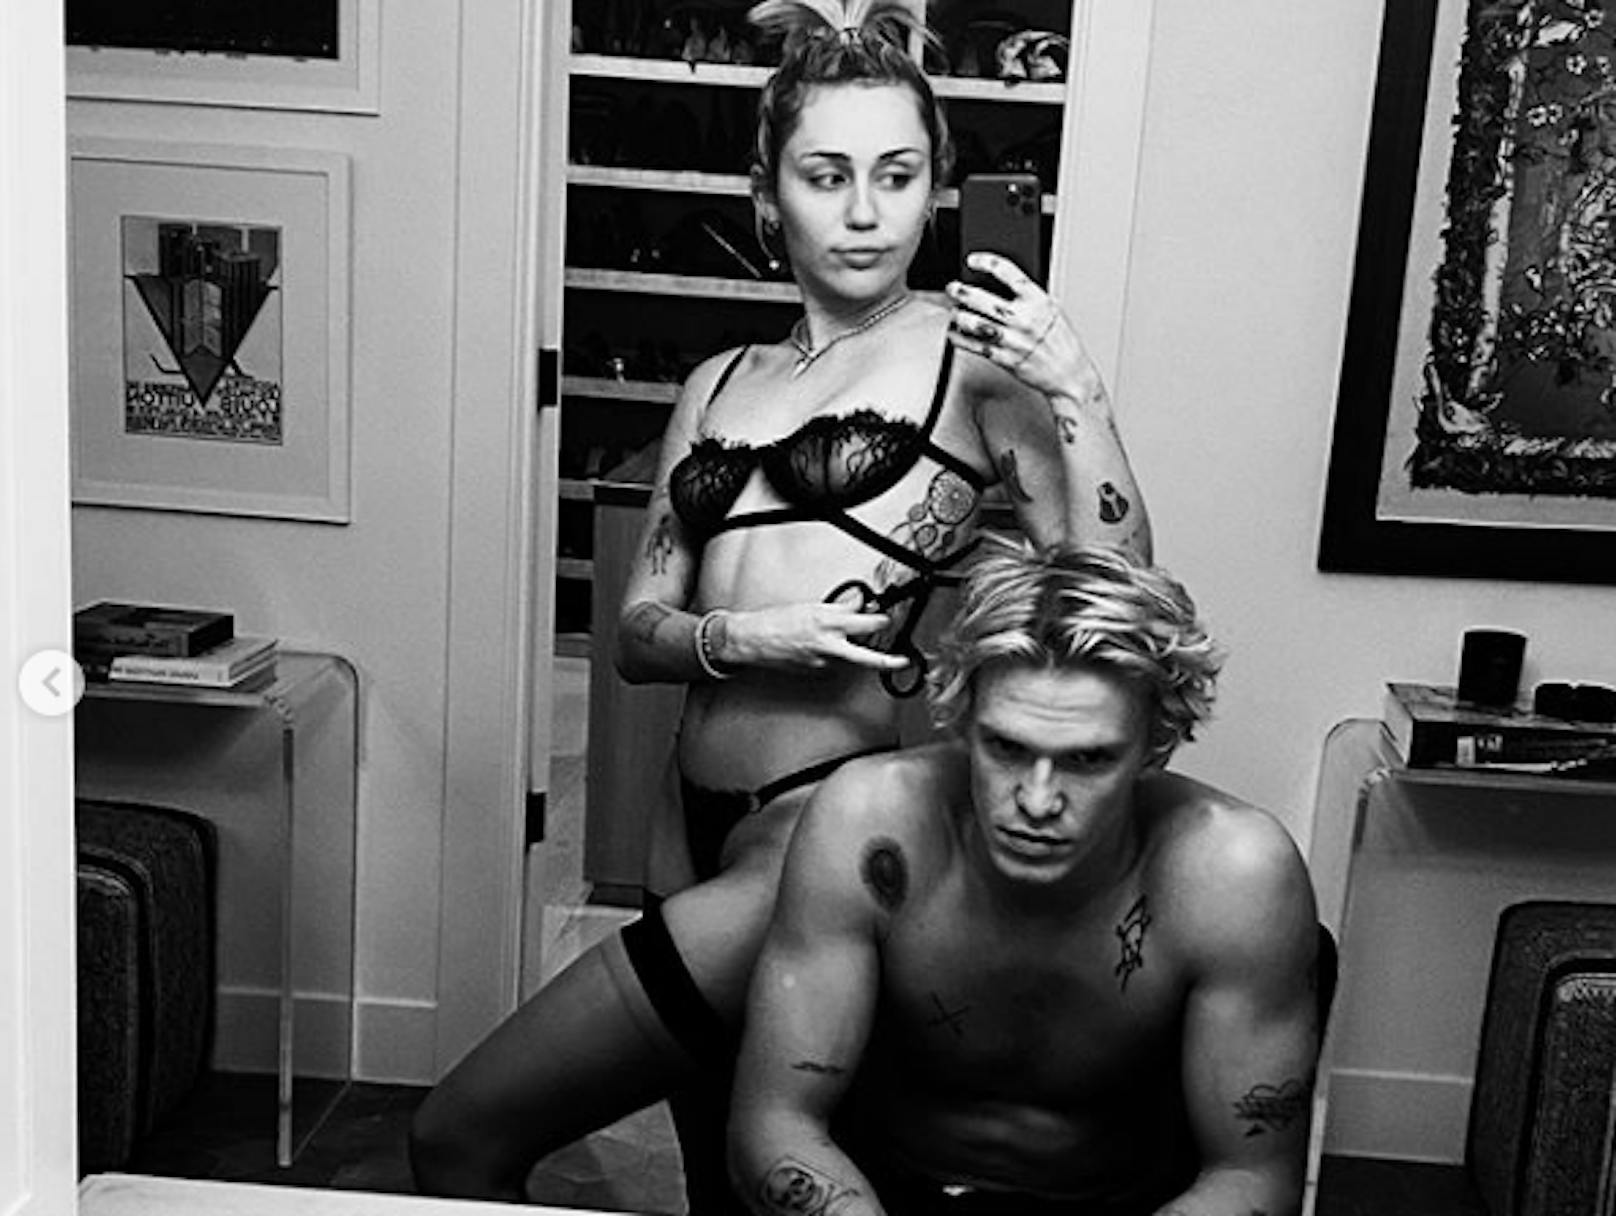 Freizügig und stolz auf ihre Tattoos zeigten sich <strong>Miley Cyrus</strong> und <strong>Cody Simpson</strong> in der Vergangenheit gerne auf Social Media.